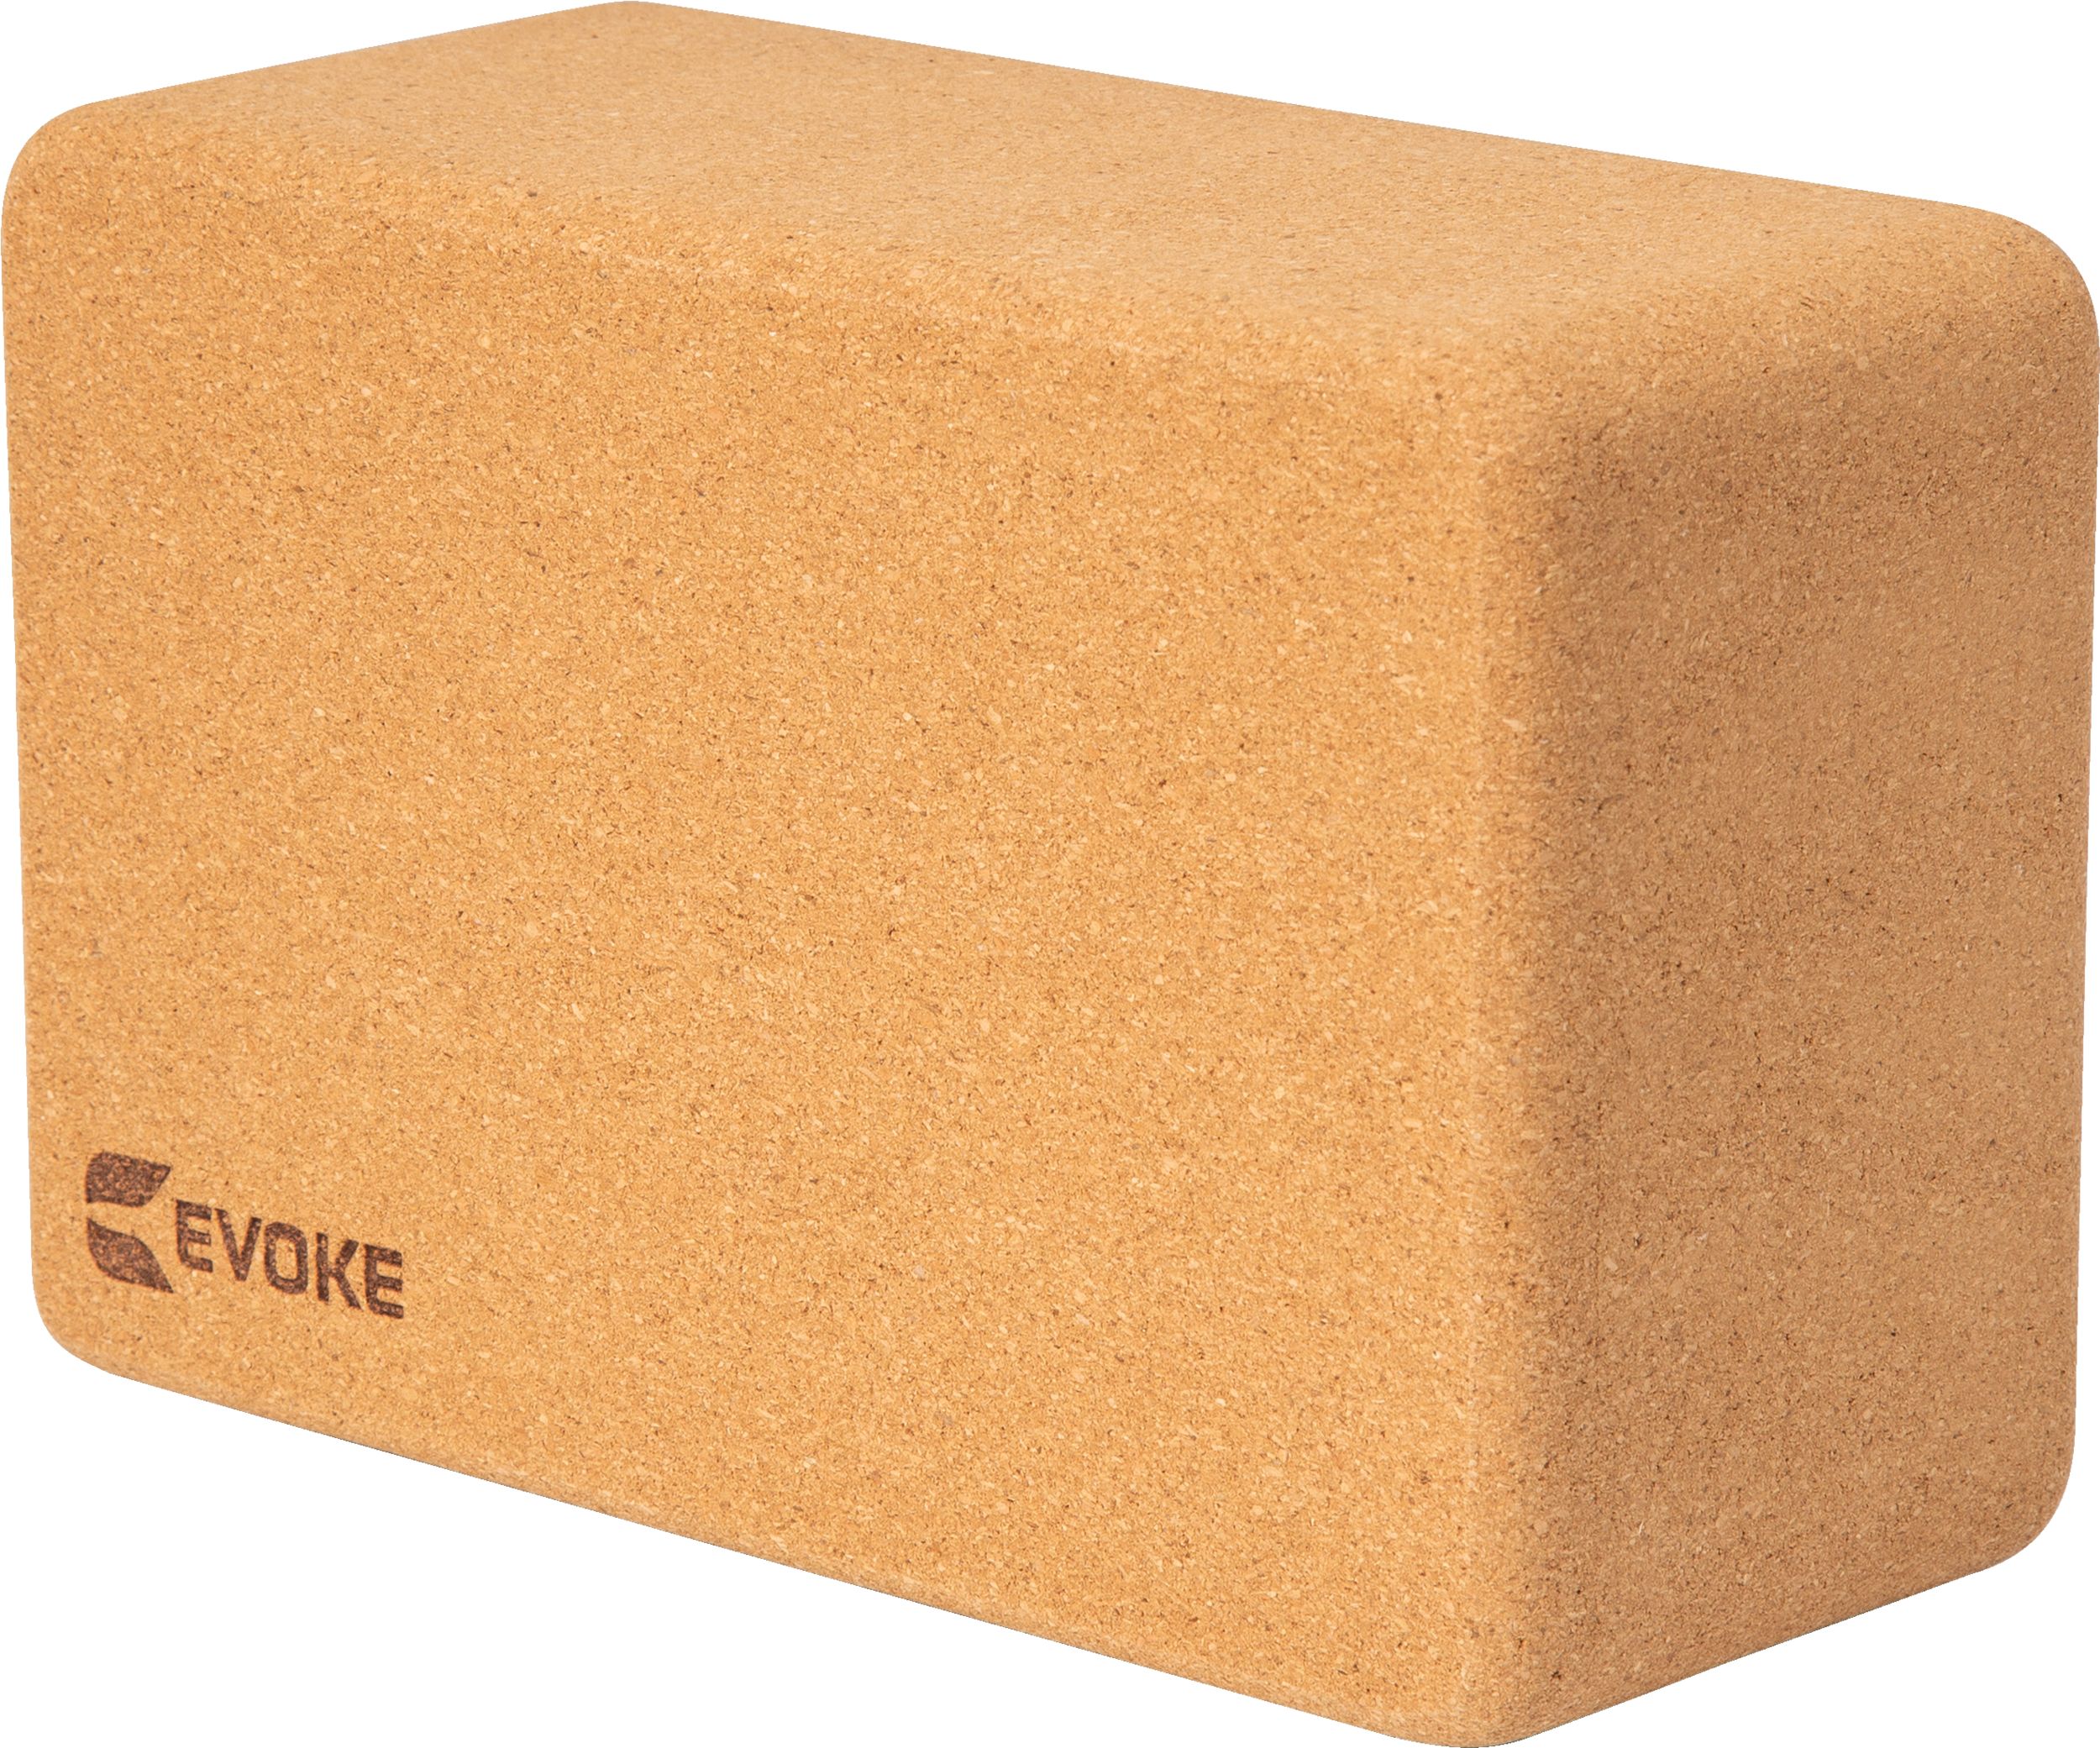 Evoke Cork Yoga Block